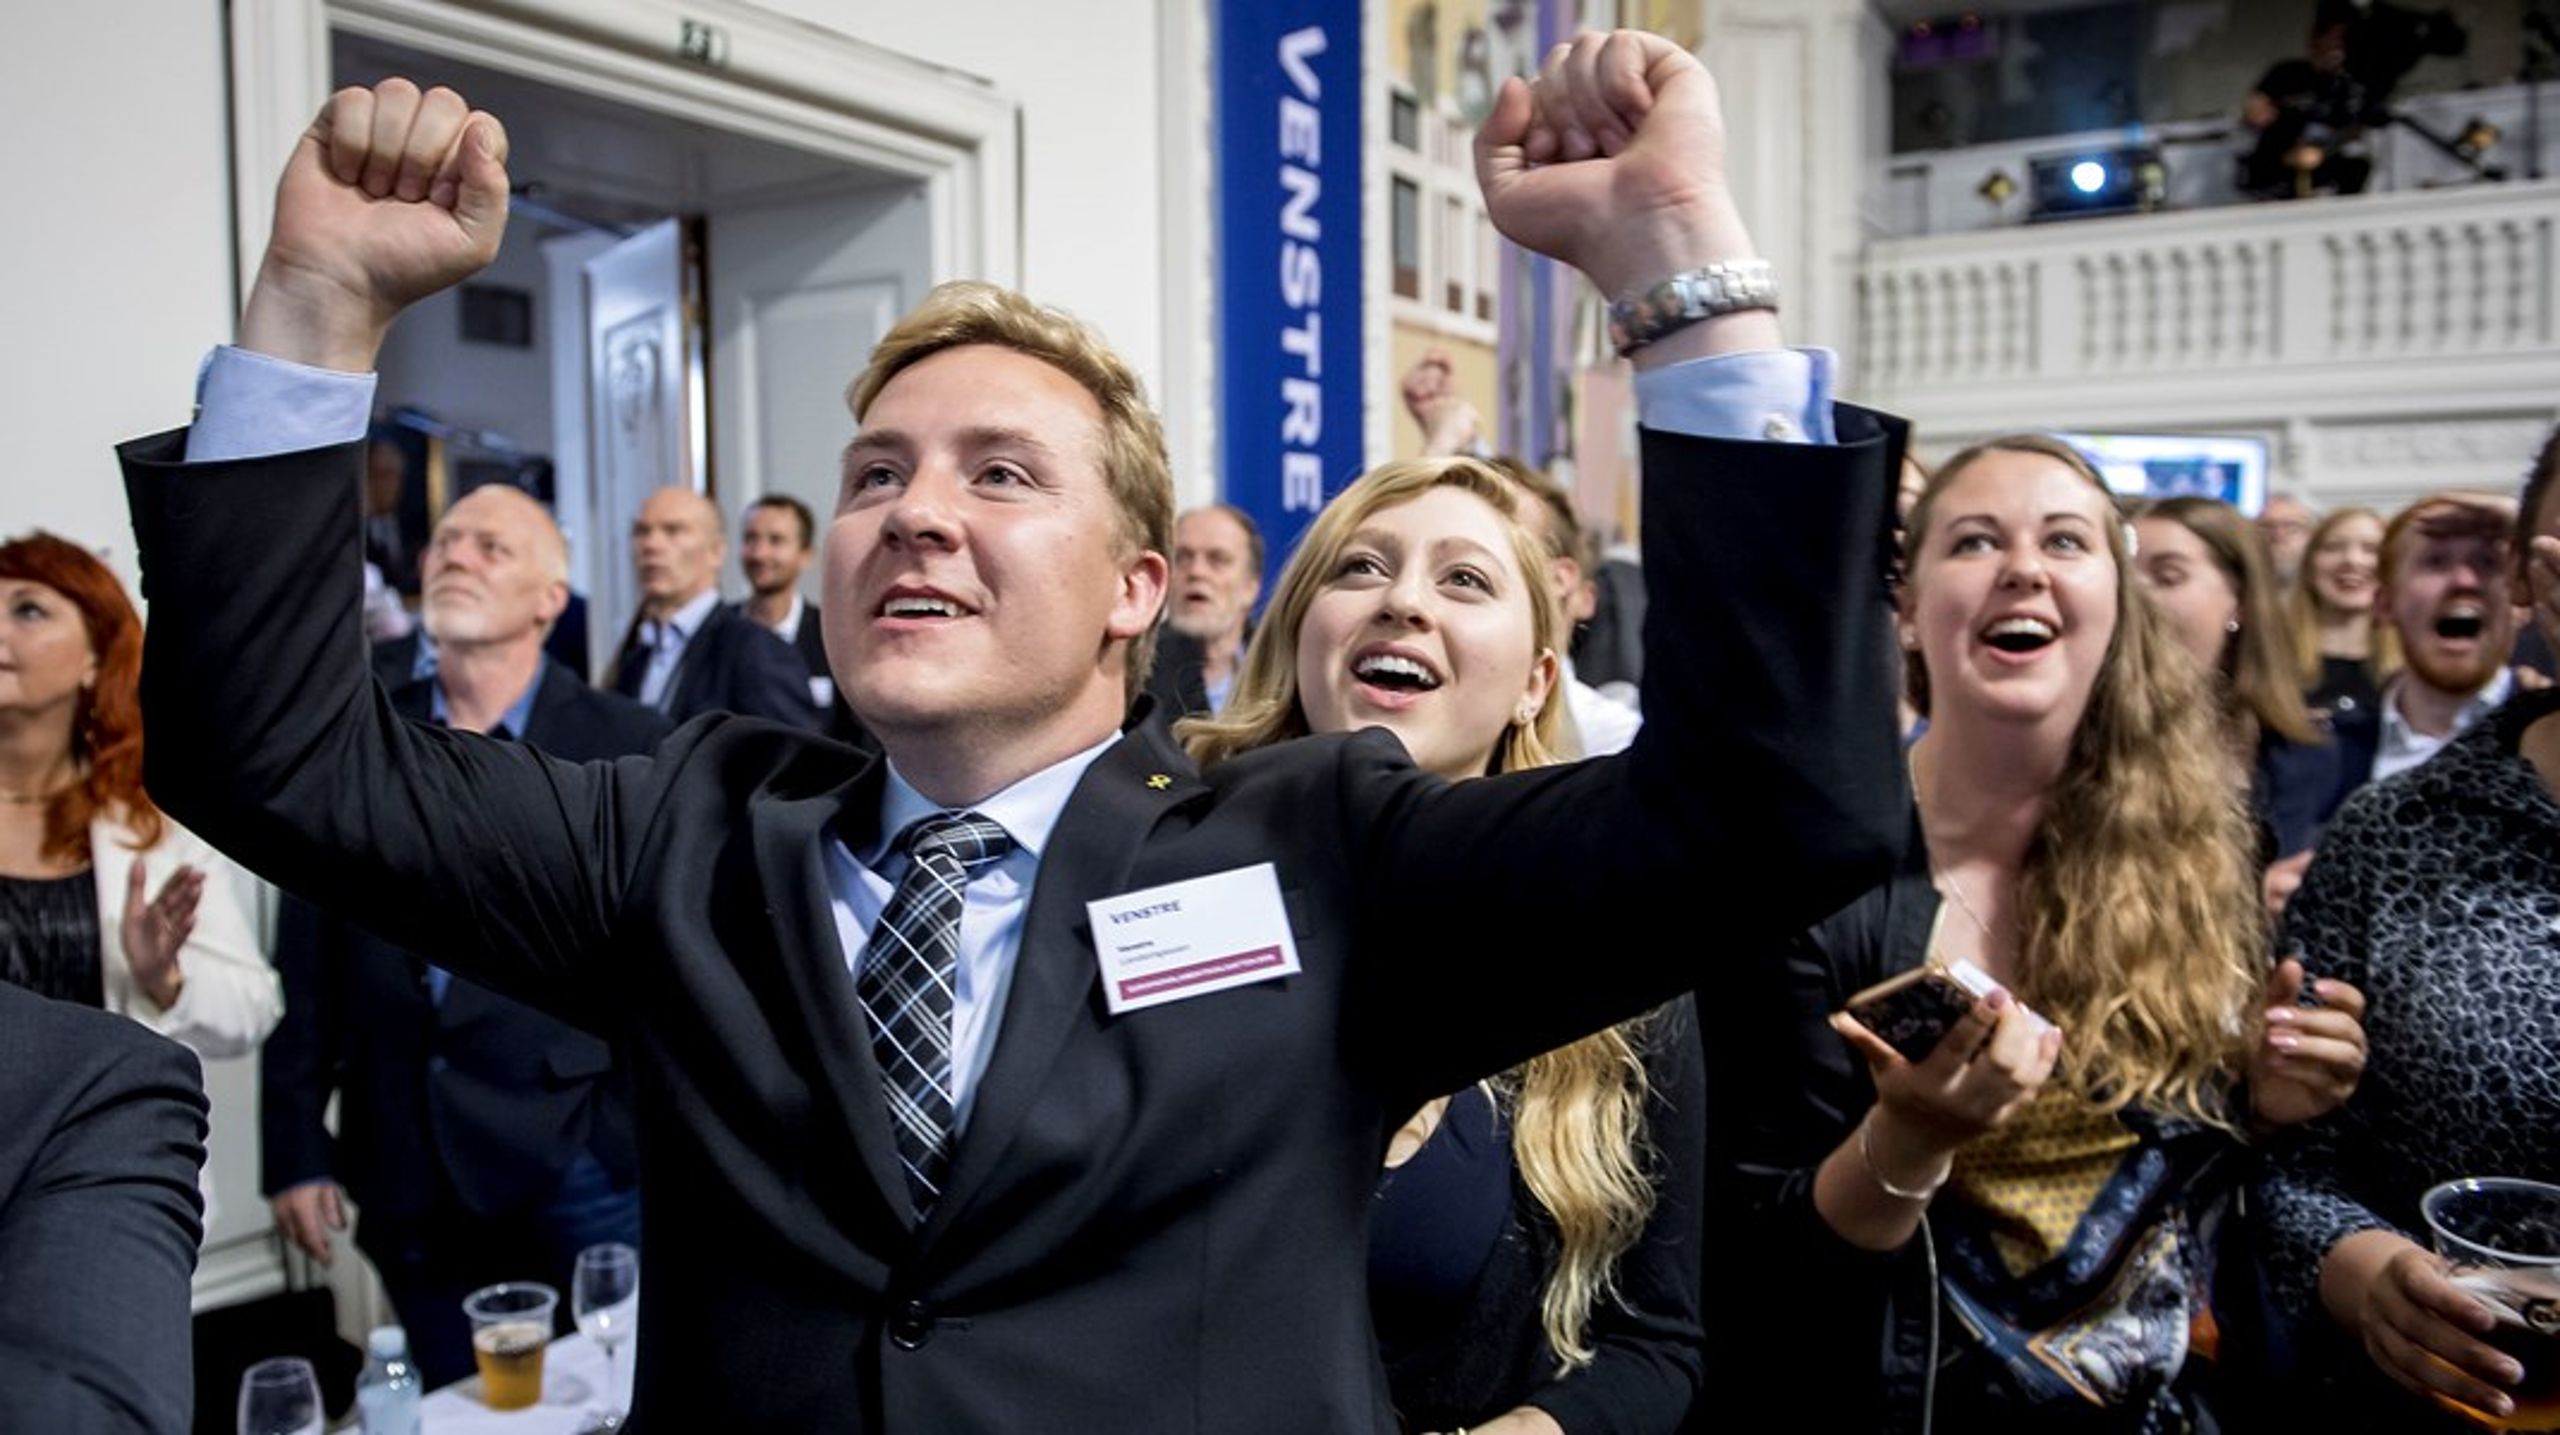 Bergur Løkke Rasmussen jubler under Venstres valgfest ved europaparlamentsvalget i 2019. Han blev dog ikke valgt ind dengang, men nu er han på vej til EU for at afløse Søren Gade, som vender hjem til Folketinget.